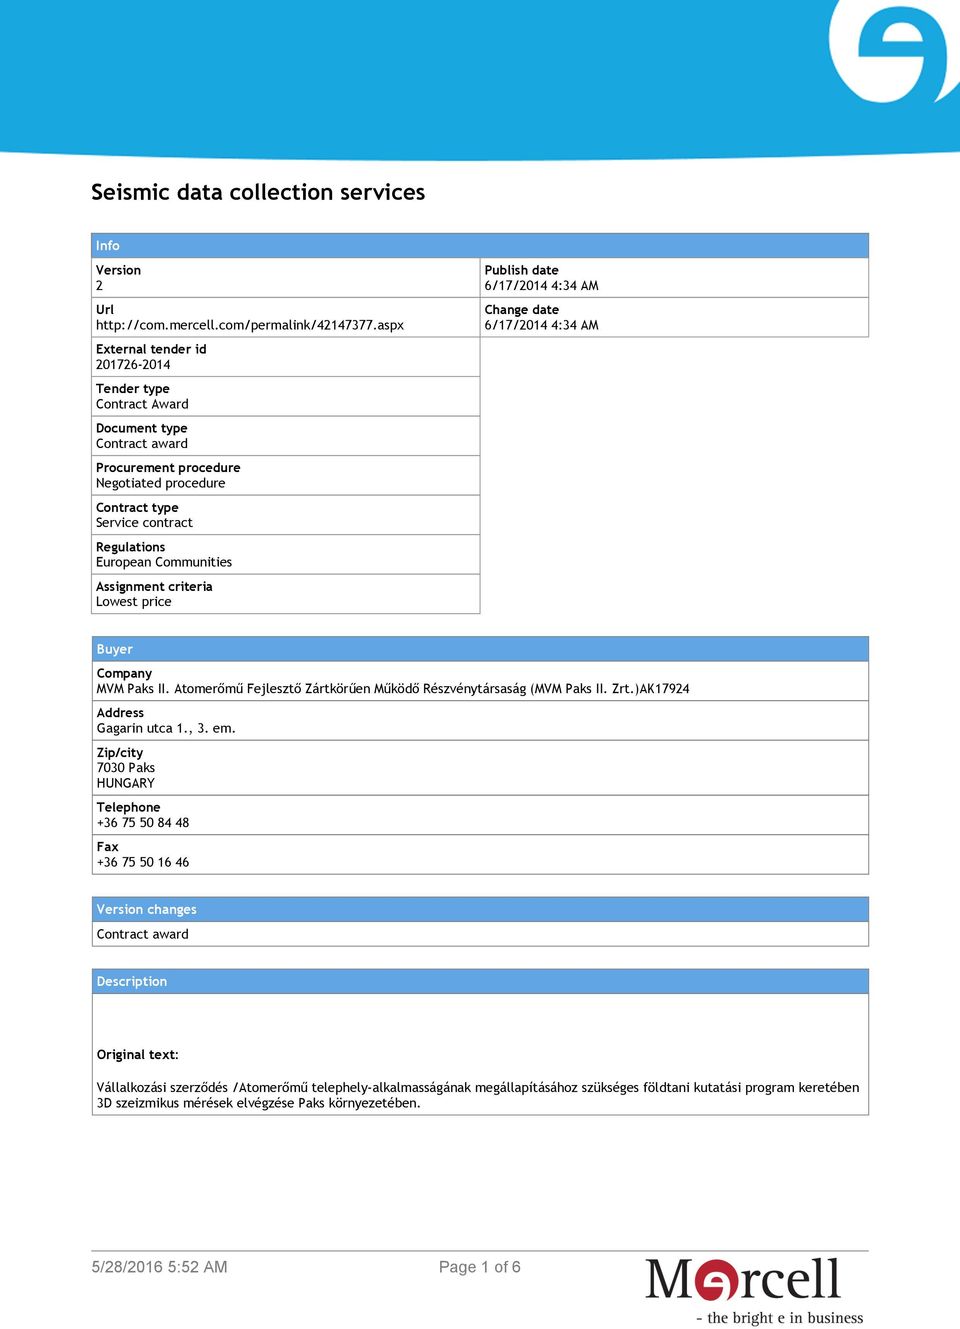 Assignment criteria Lowest price Publish date 6/17/2014 4:34 AM Change date 6/17/2014 4:34 AM Buyer Company MVM Paks II. Atomerőmű Fejlesztő Zártkörűen Működő Részvénytársaság (MVM Paks II. Zrt.